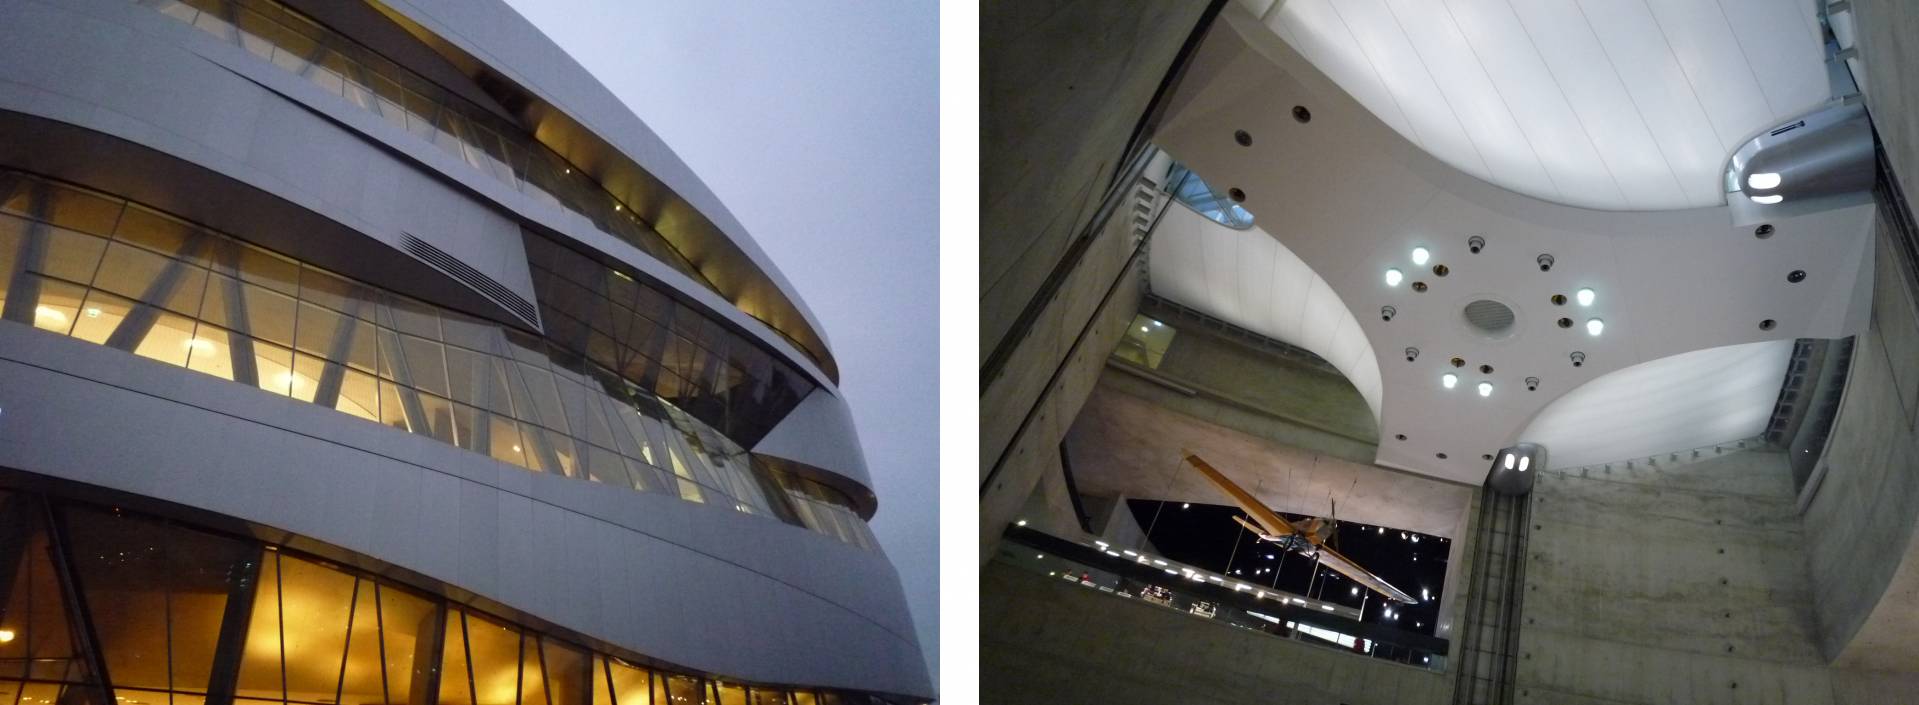 Komplexe Geometrien an der Fassade, textile Lichtdecke als „Himmel“ im Atrium (Fotos: J. Müller)